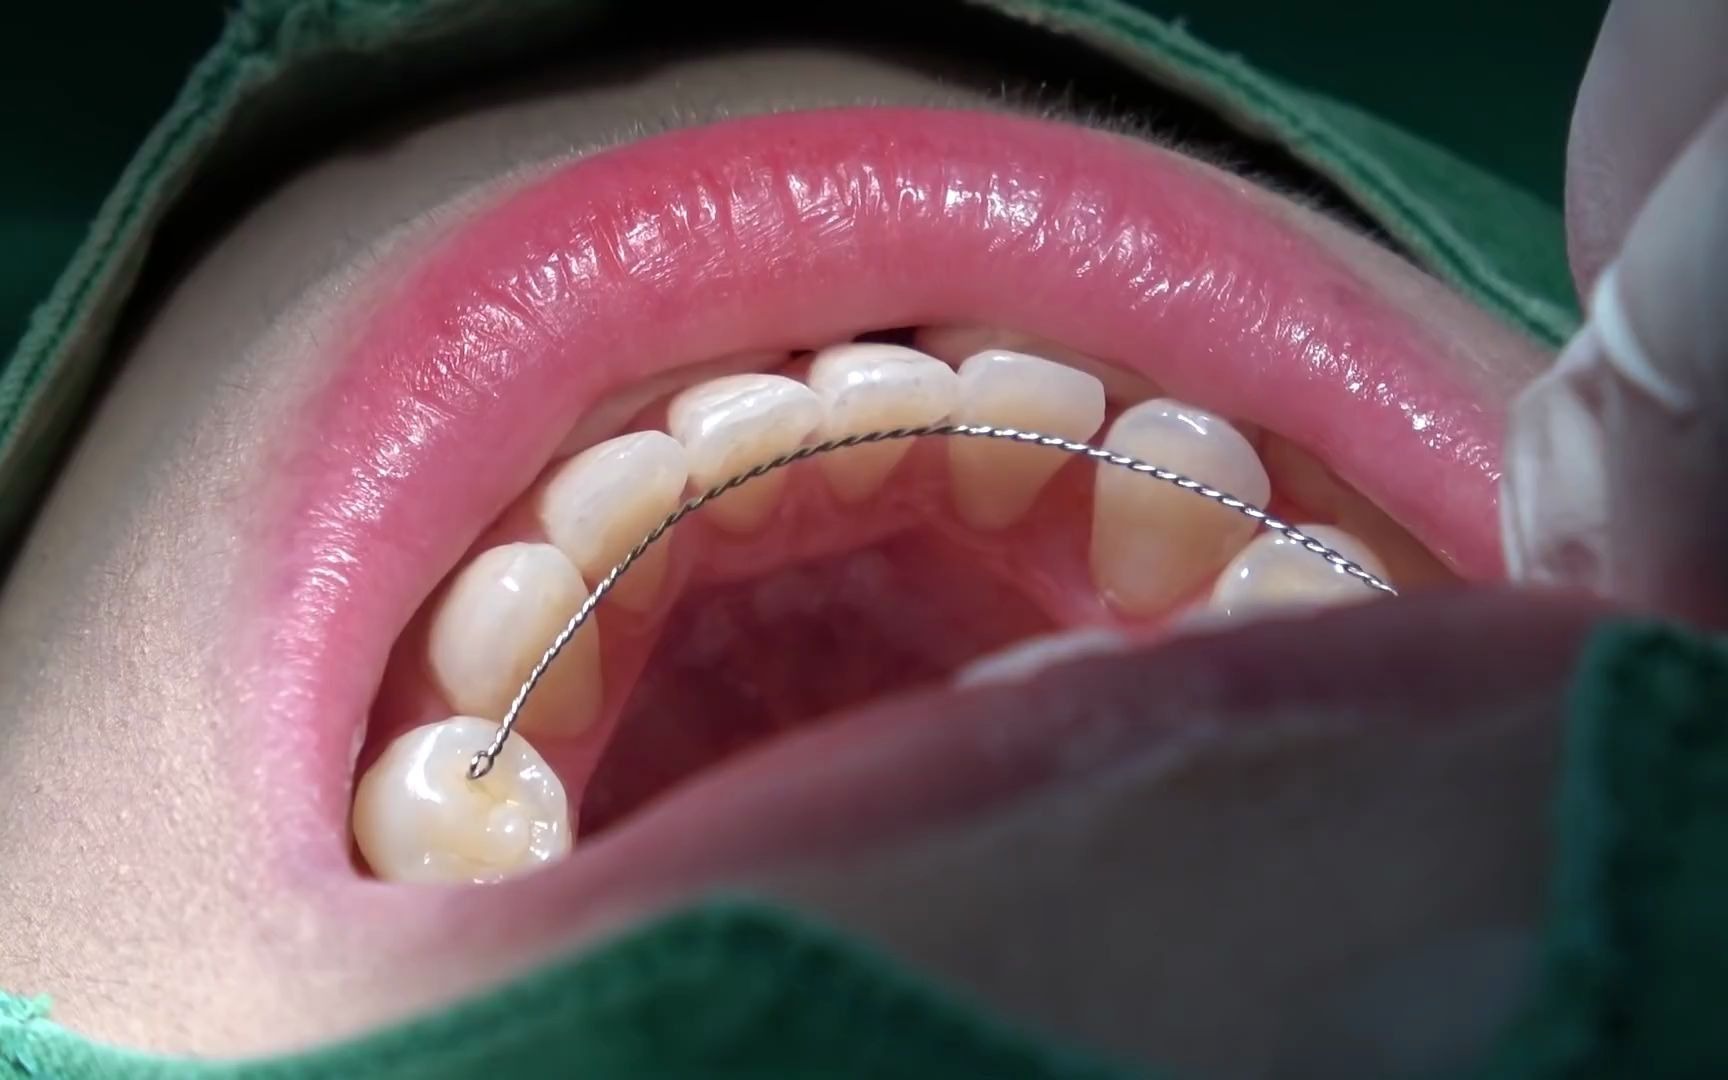 戴保持器 也是牙齿矫正的一部分!